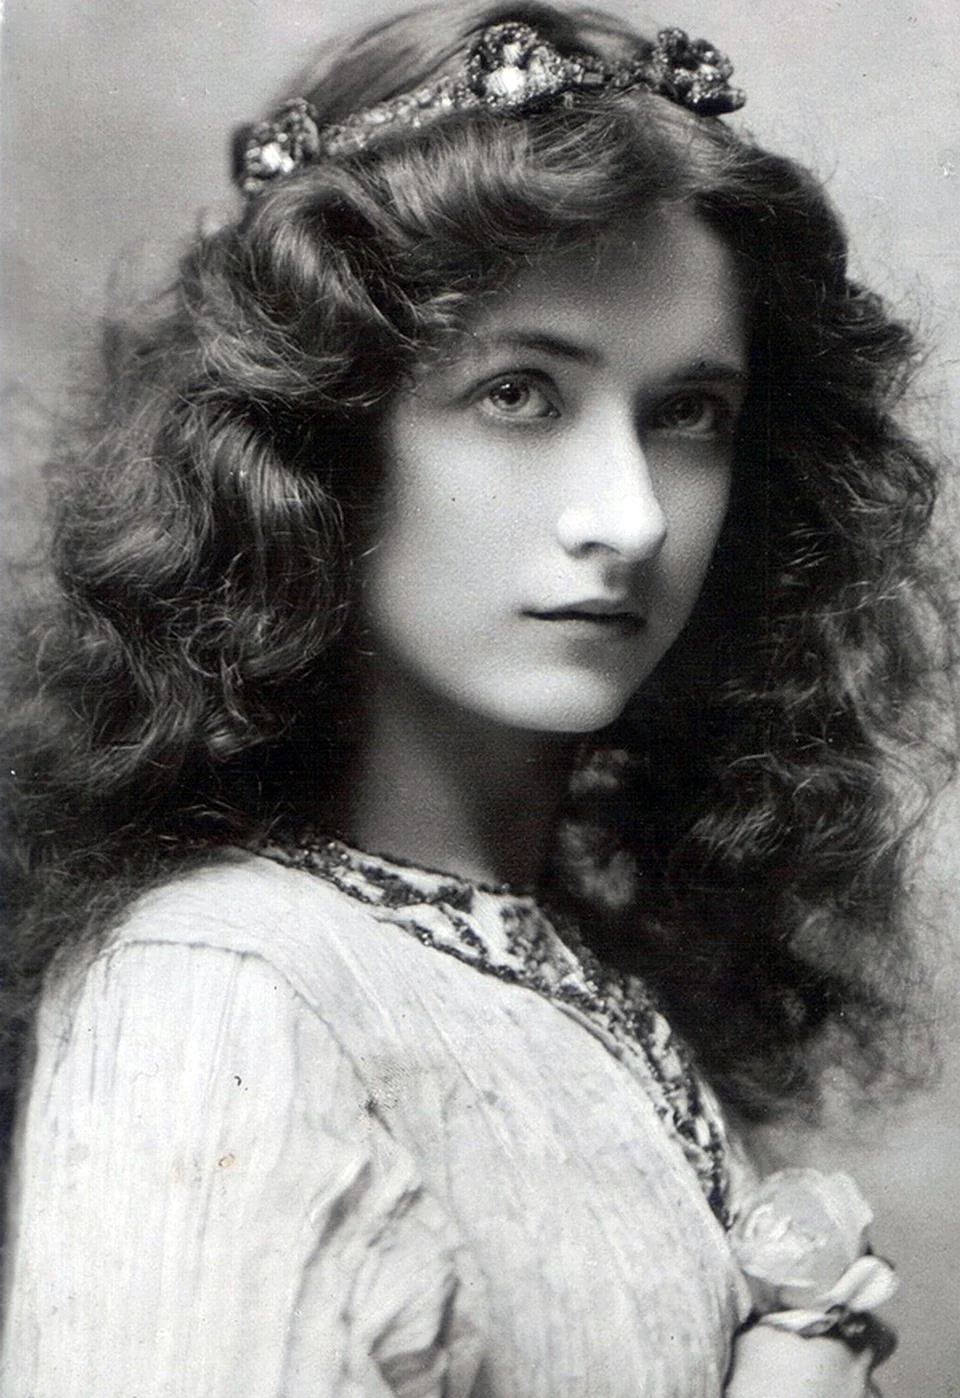 Maude Fealy красавицы 19 века. Знаменитость